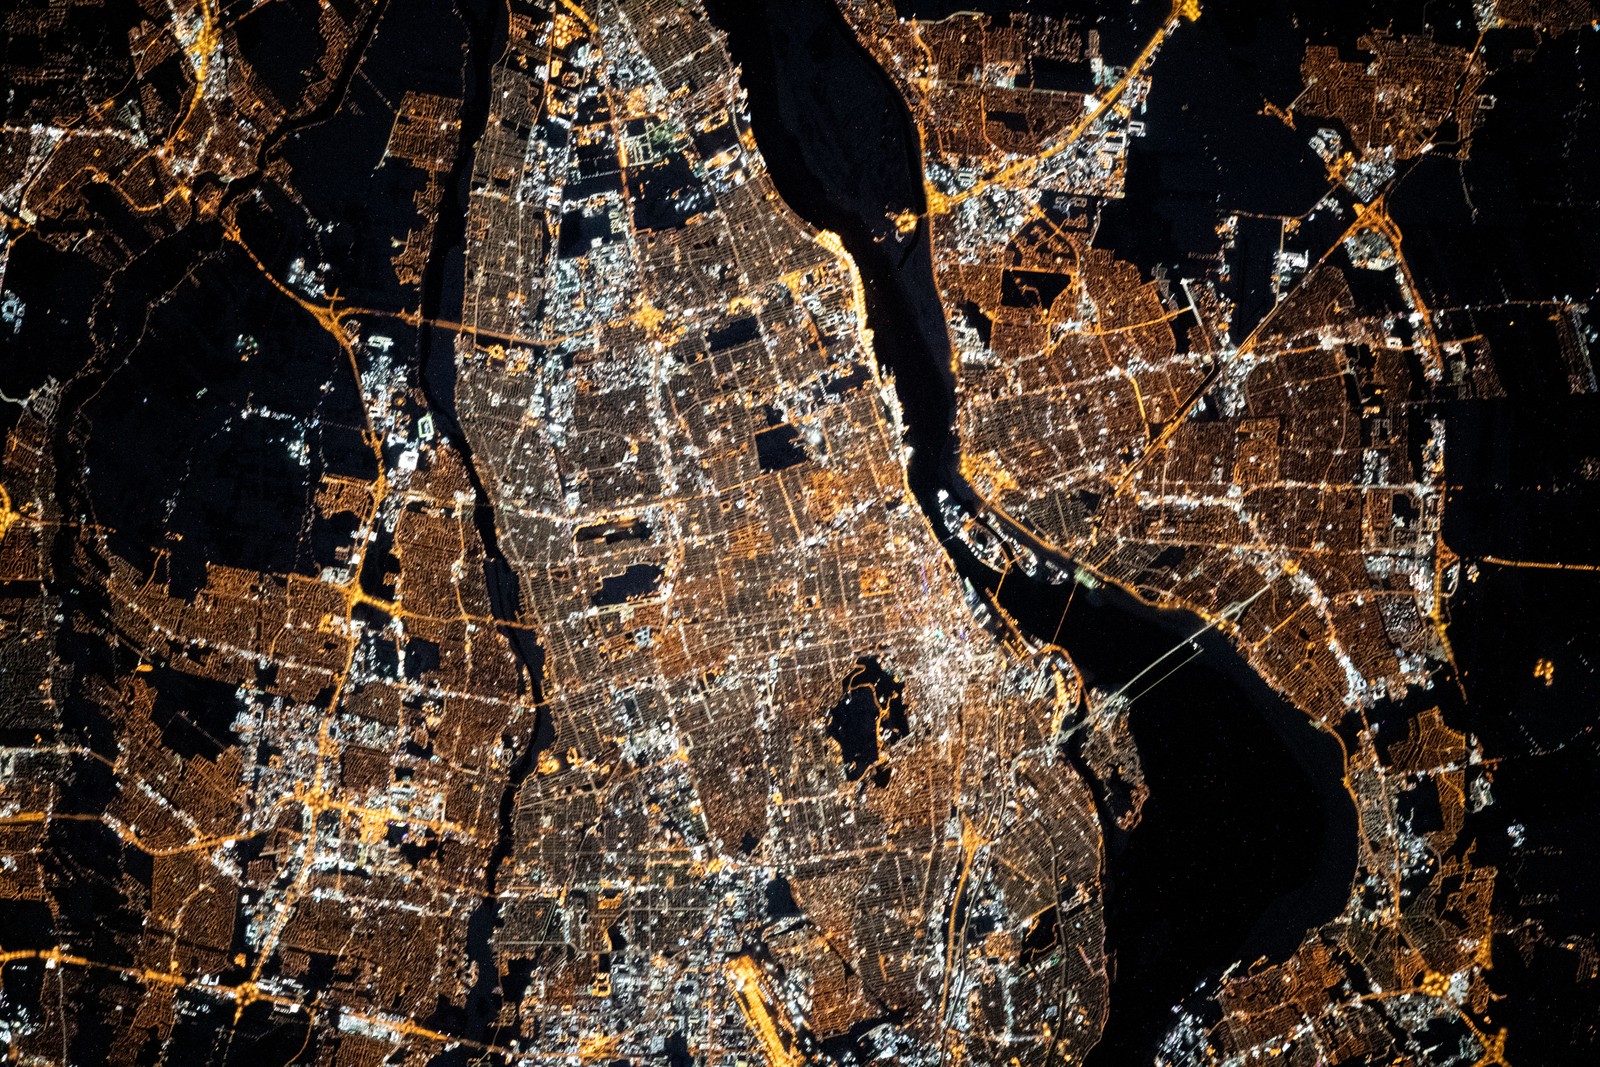 Luzes da cidade de Montreal retratadas pela Estação Espacial Internacional em 26 de fevereiro de 2021 enquanto estava a cerca de 420 quilômetros acima de Quebec, Canadá